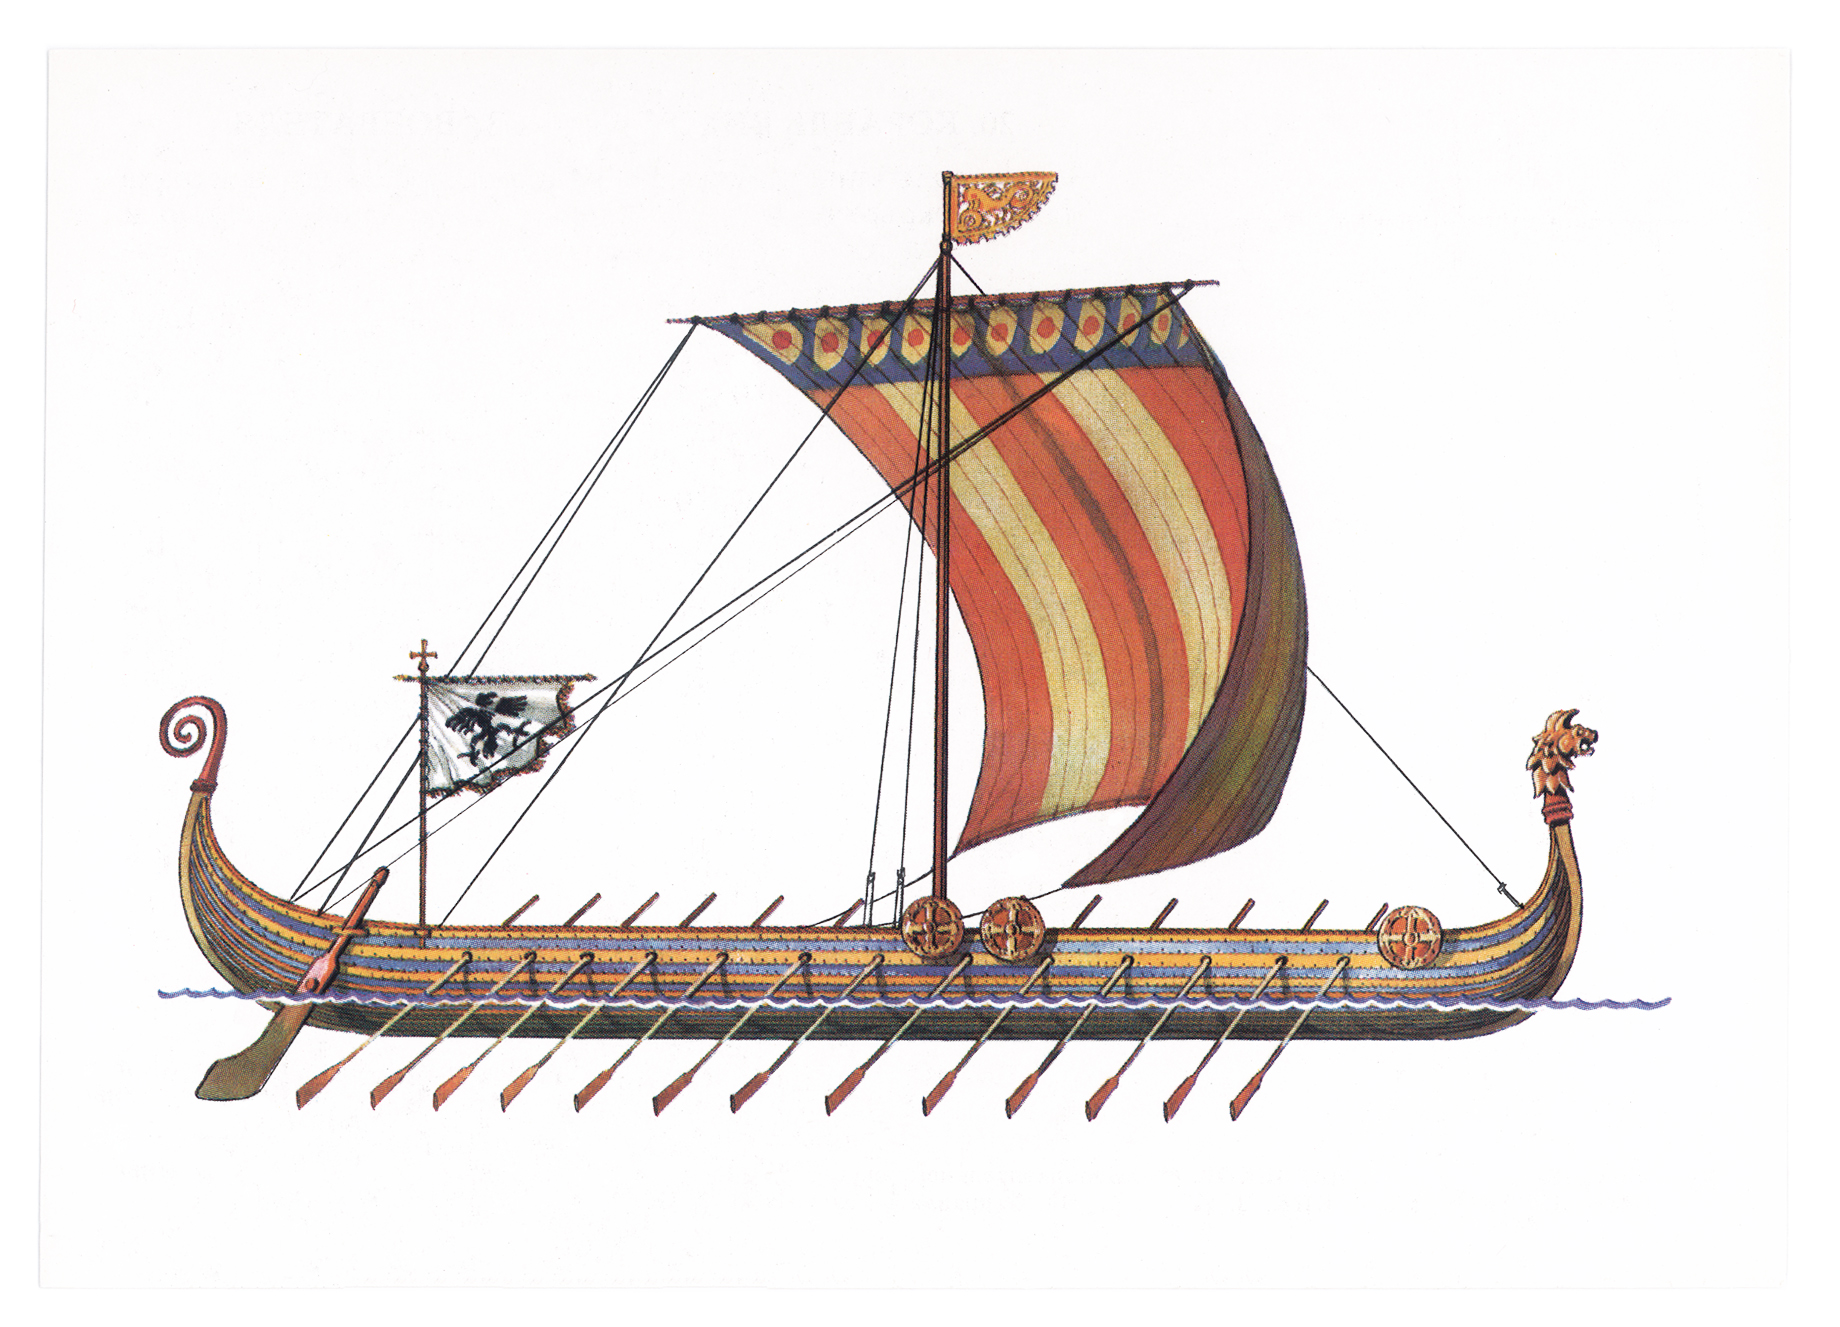 Название ладьи. Корабль викингов Drakkar. Ладья викингов дракар. Корабль викингов Драккар 10 век. Корабли Вильгельма завоевателя.